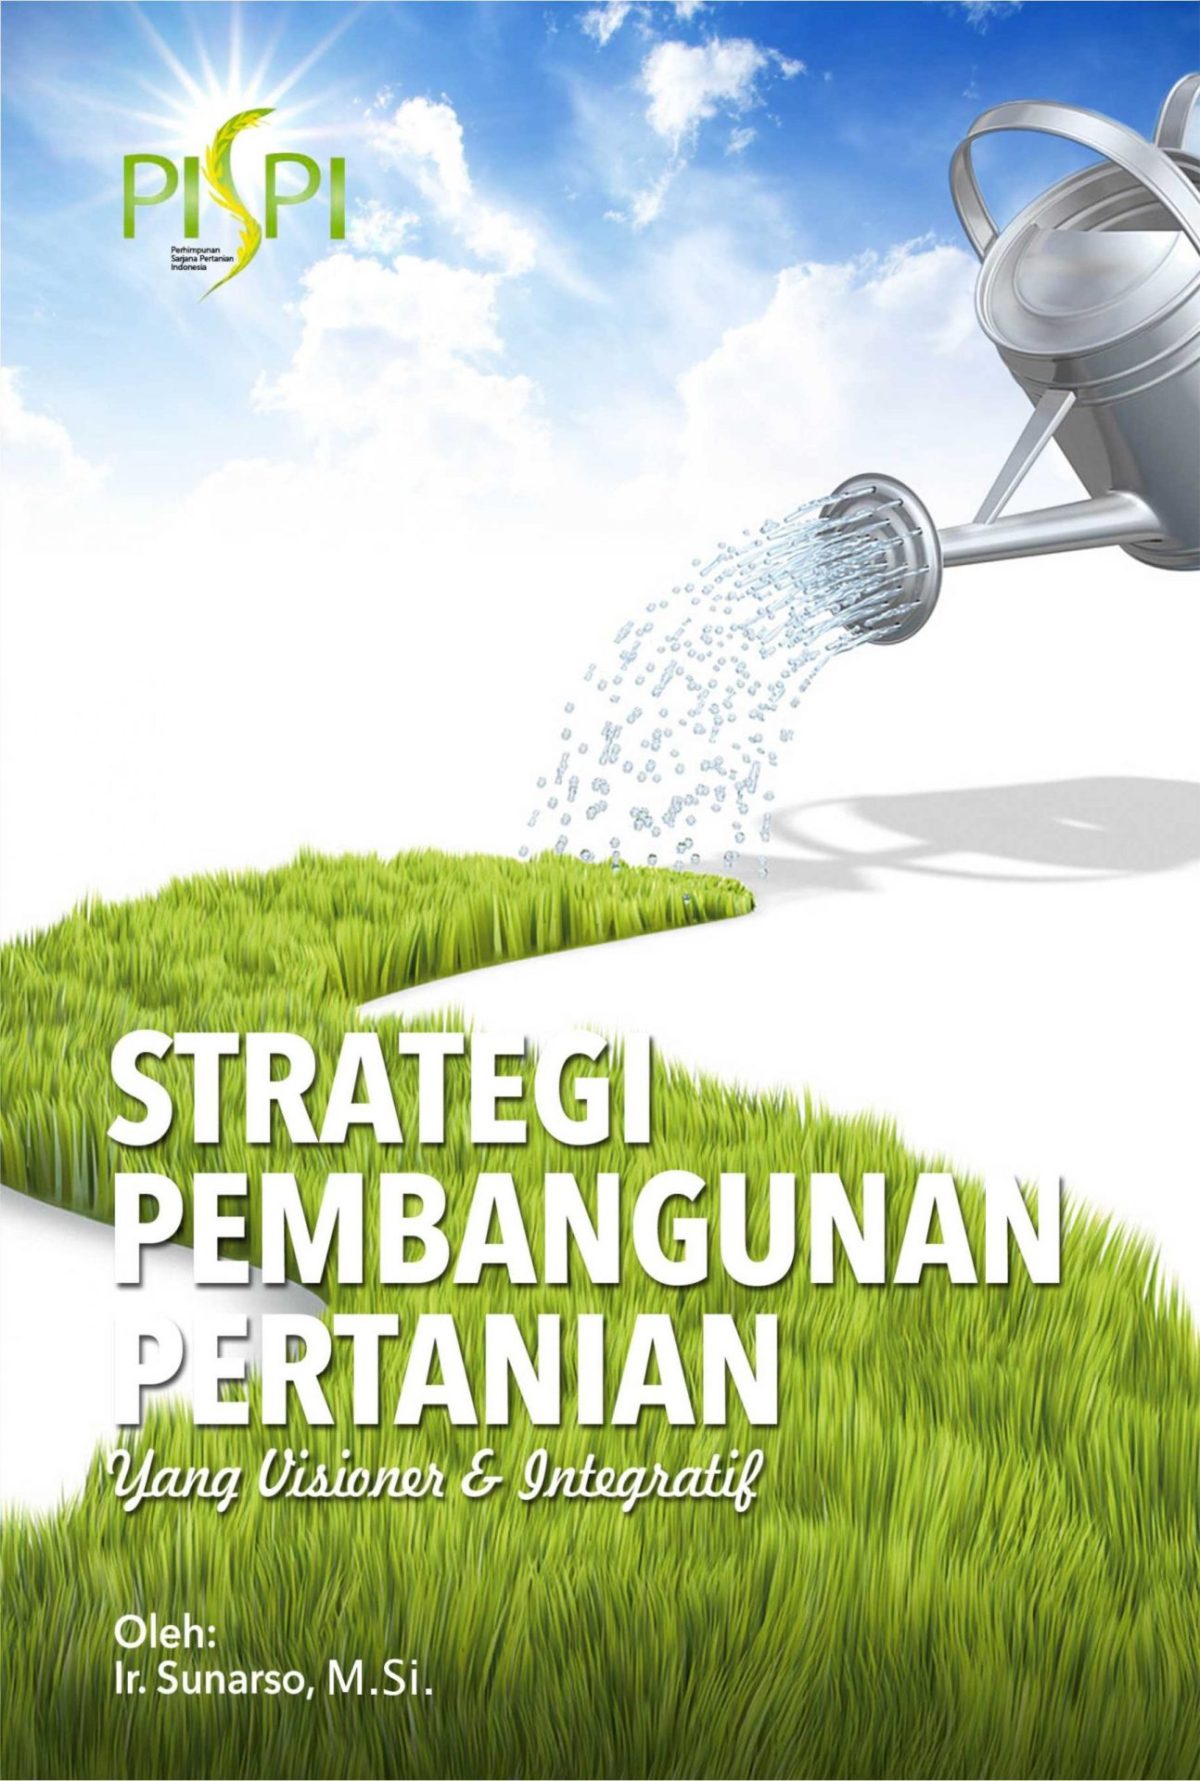 Strategi Pembangunan Pertanian yang Visioner dan Integratif